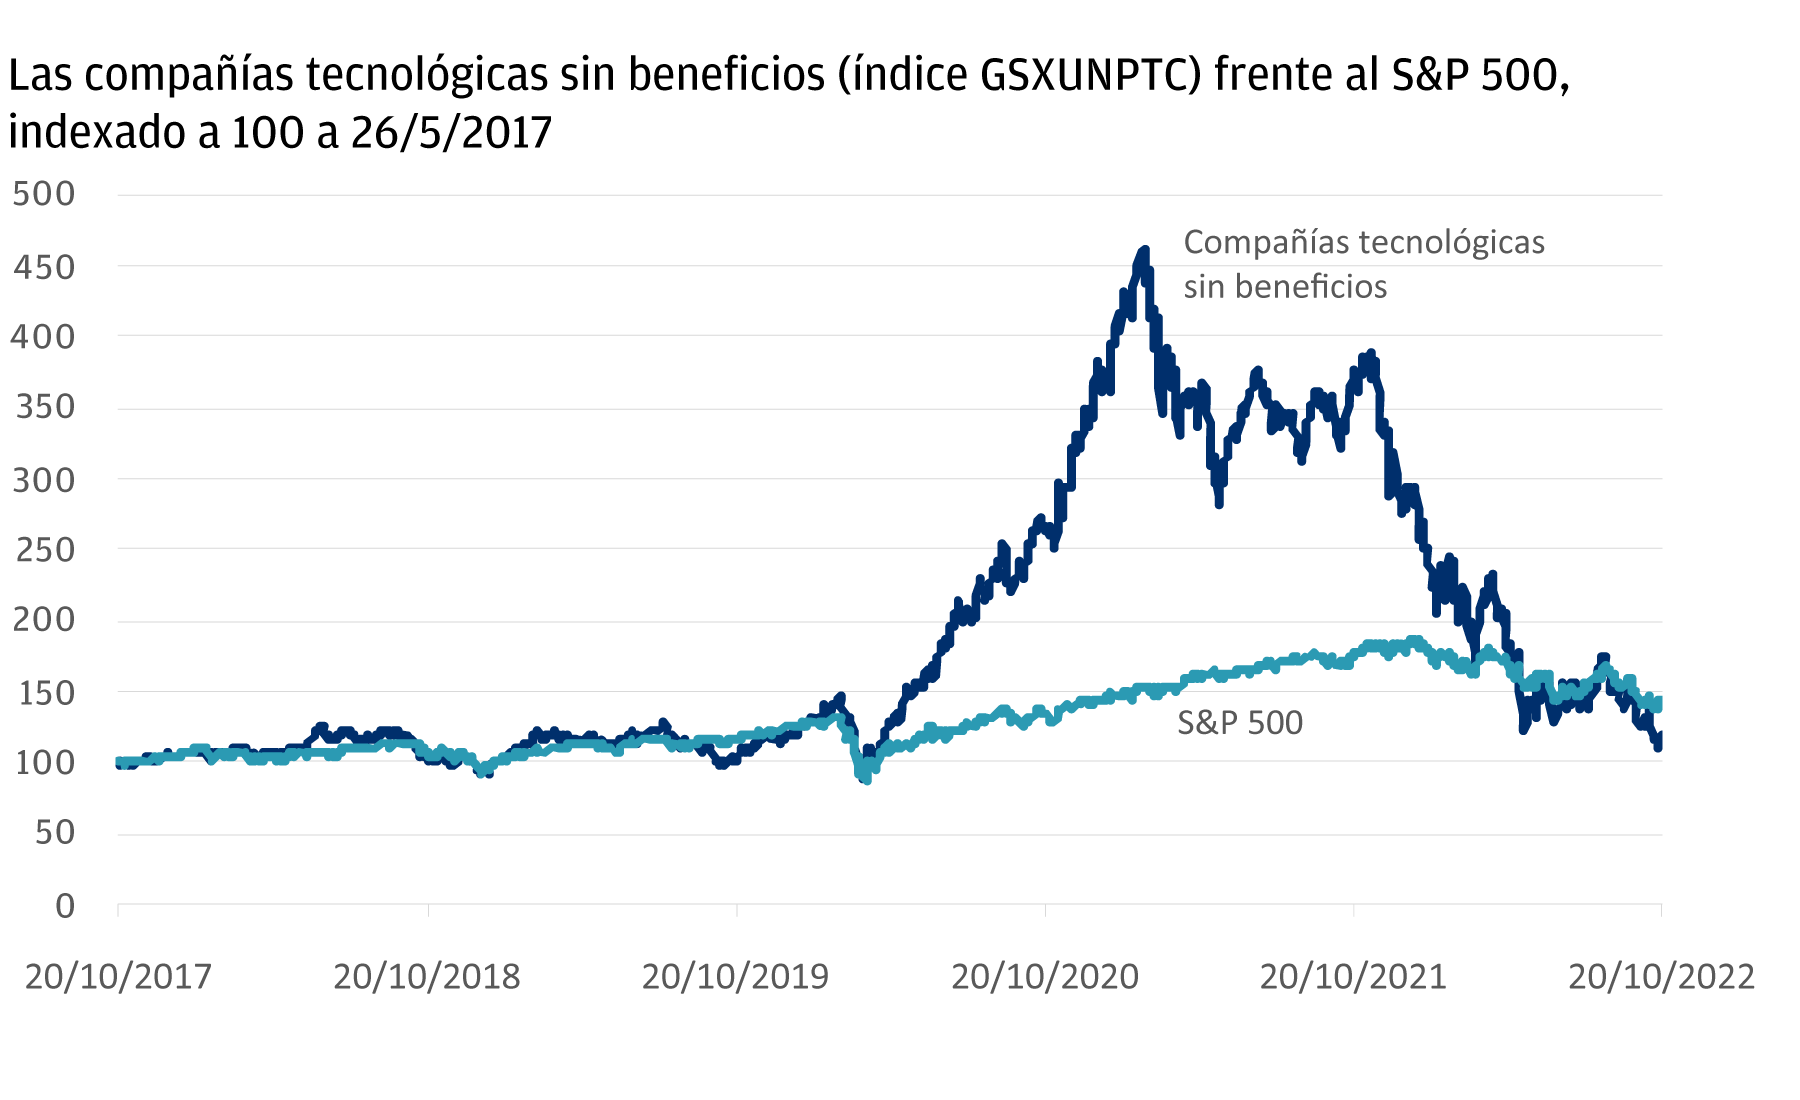 Éste es un gráfico lineal que muestra la rentabilidad del índice tecnológico sin beneficios frente al S&P 500 entre 2017 y 2022. De 2017 a 2020 ambos índices se siguen de cerca, hasta el inicio de la pandemia, momento en el cual el índice de compañías tecnológicas aún sin beneficios crece significativamente, antes de volver al nivel del S&P en 2022. 